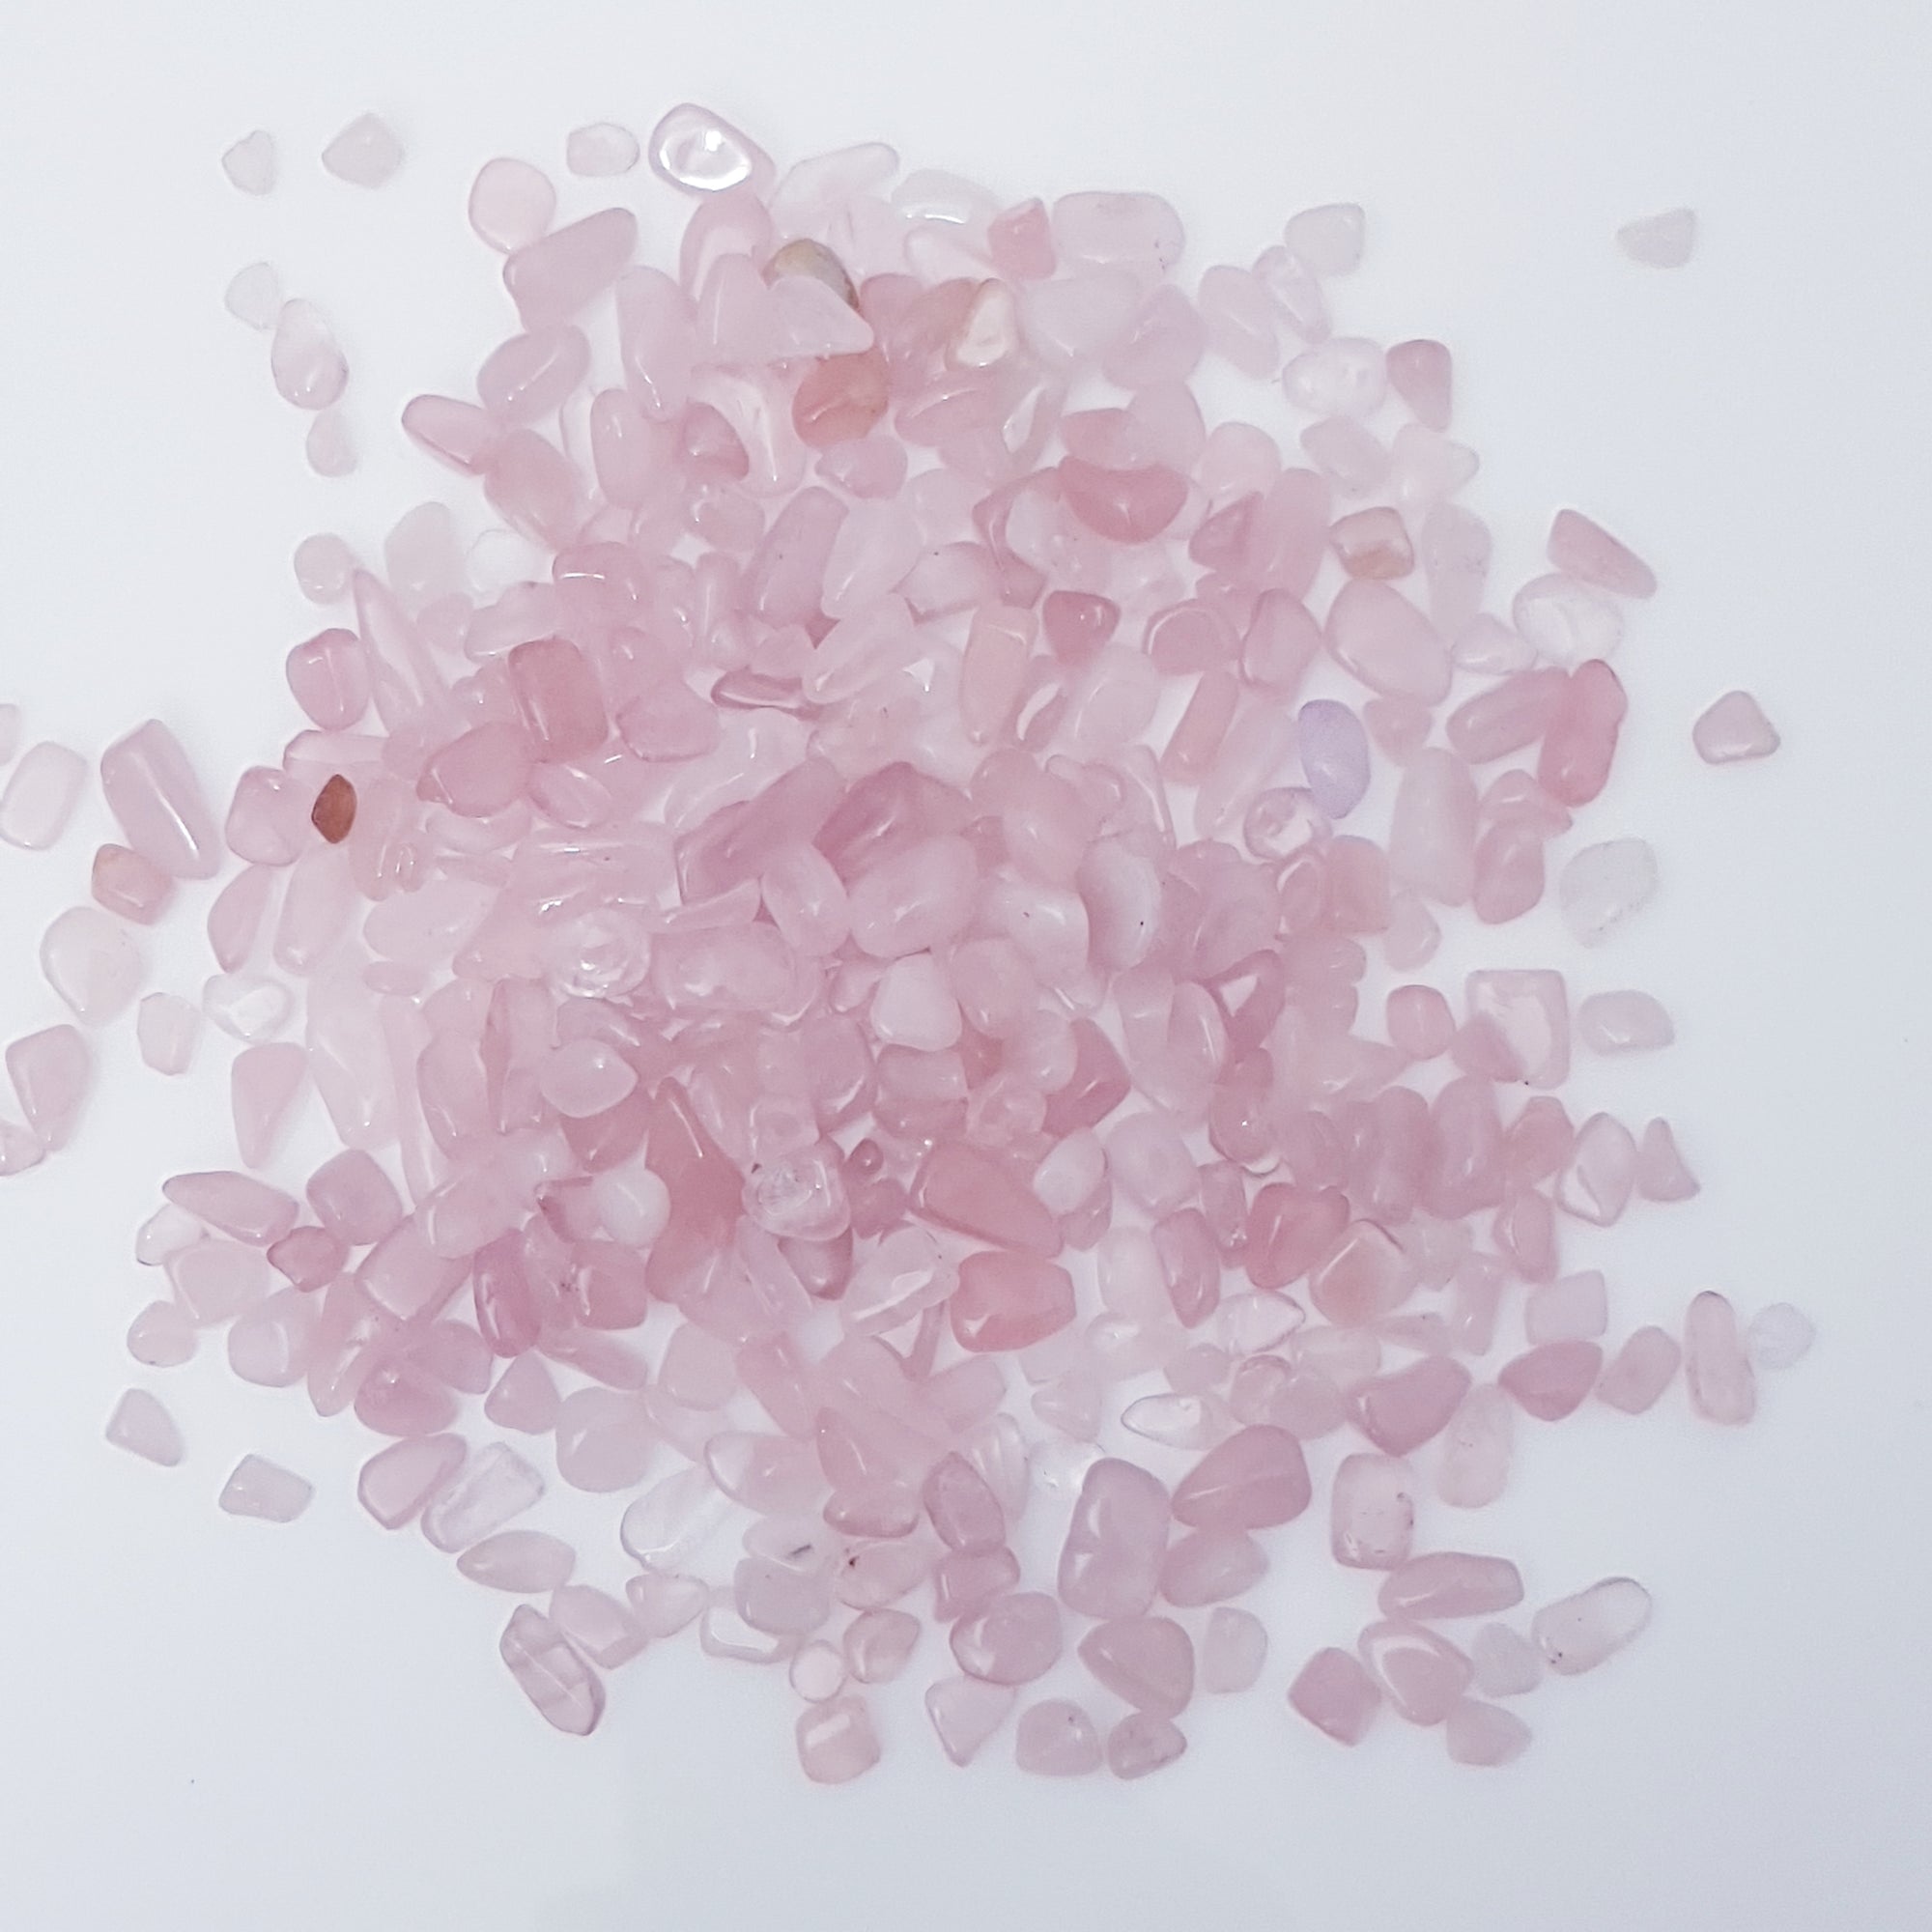 Rose quartz crystal chips 100g